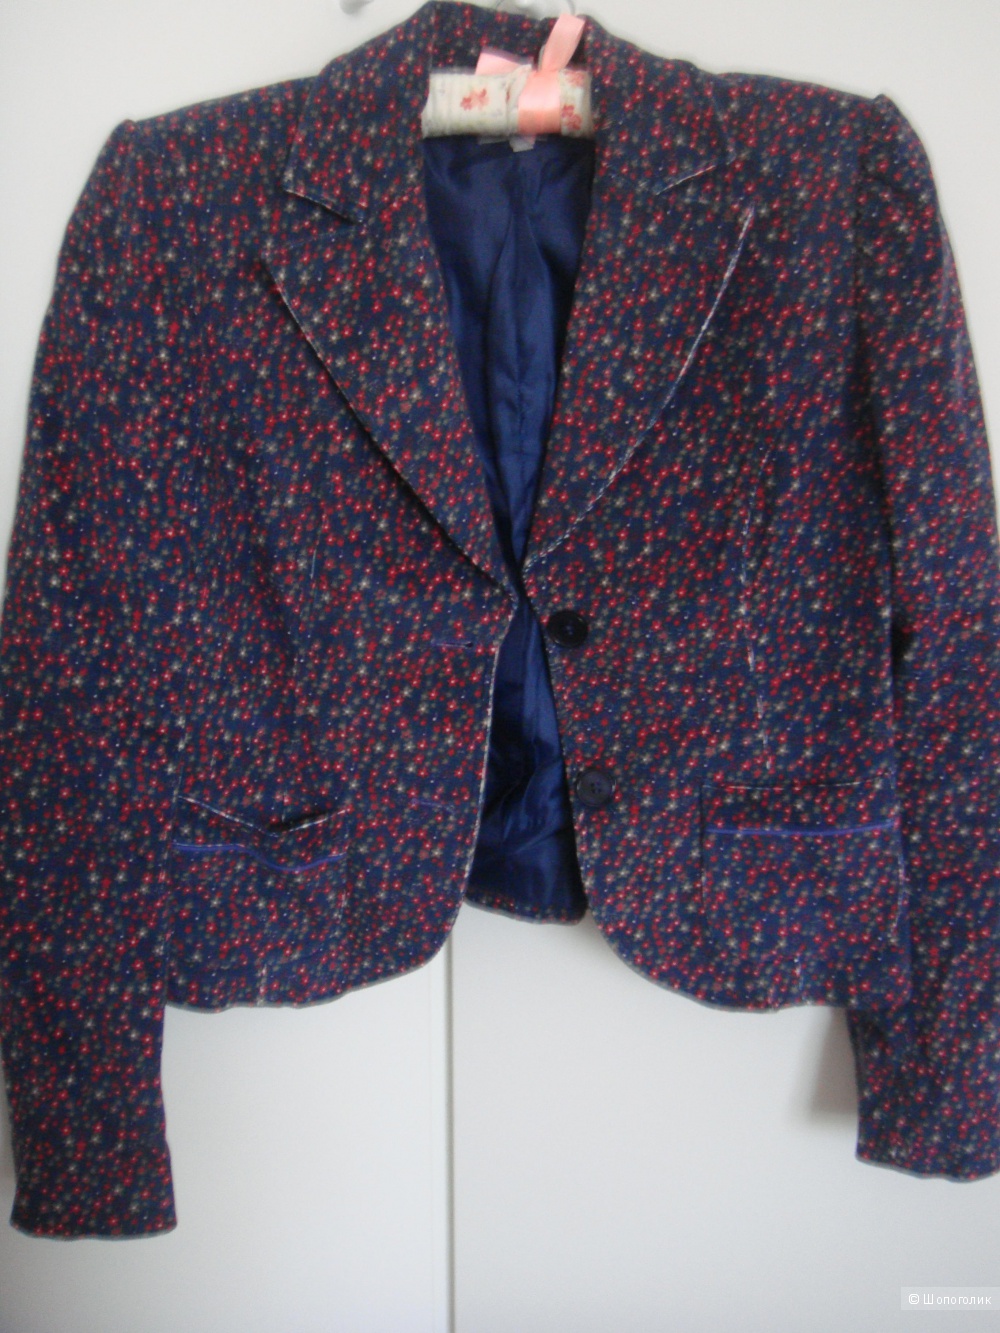 Пиджак Naf-Naf, 36 размер